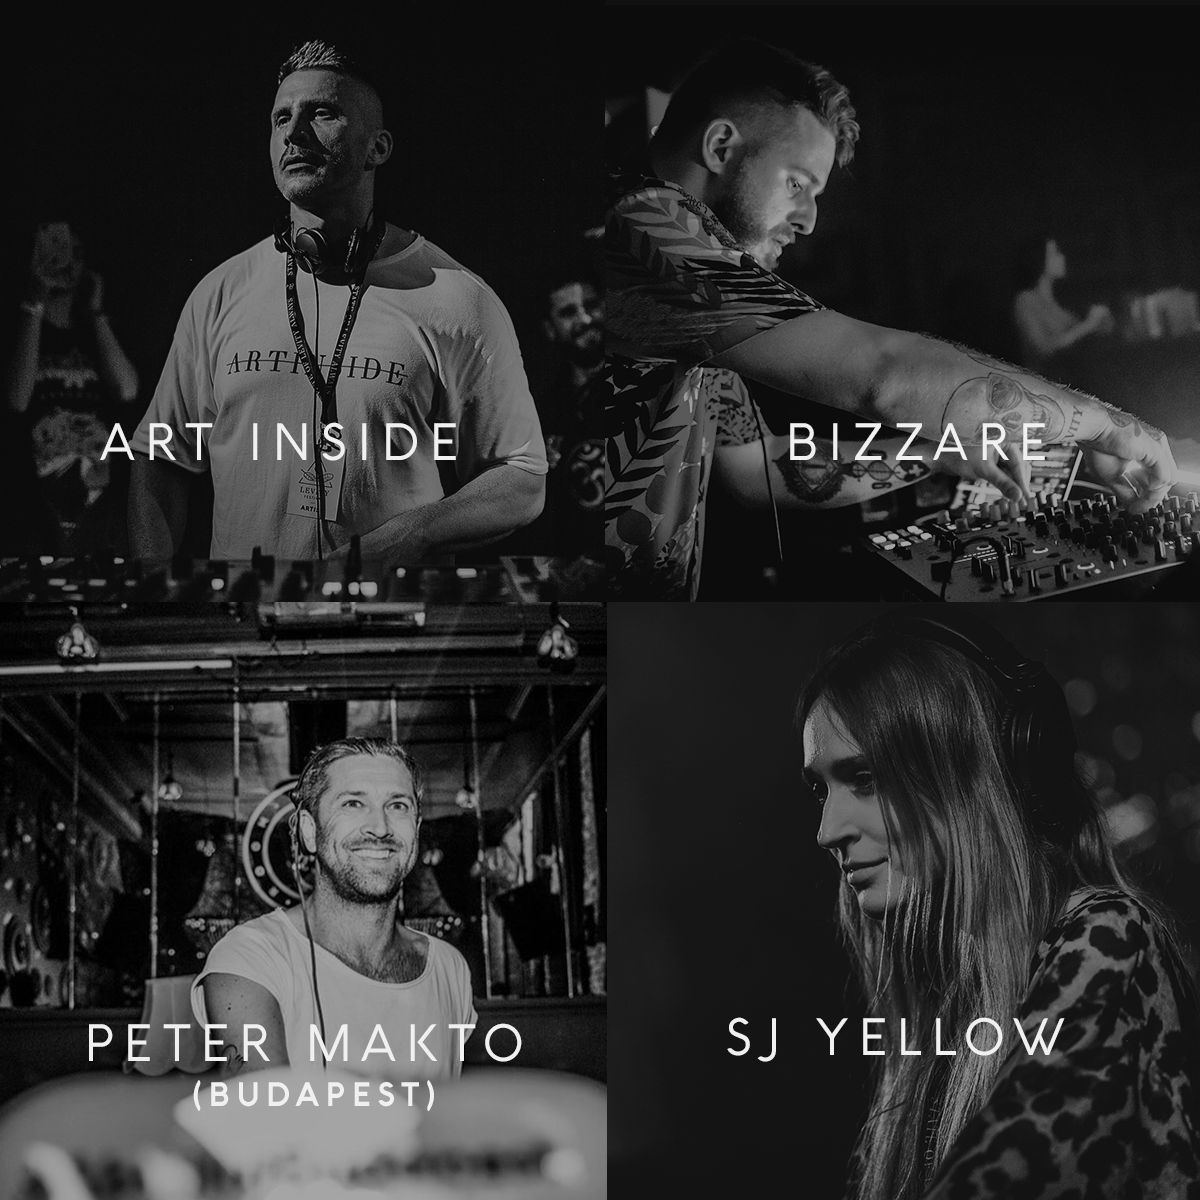 Levity prinesie po Vianociach do Bratislavy duo ARTBAT z Ukrajiny. Sú držiteľmi prestížnej ceny Ibiza DJ Awards 2019